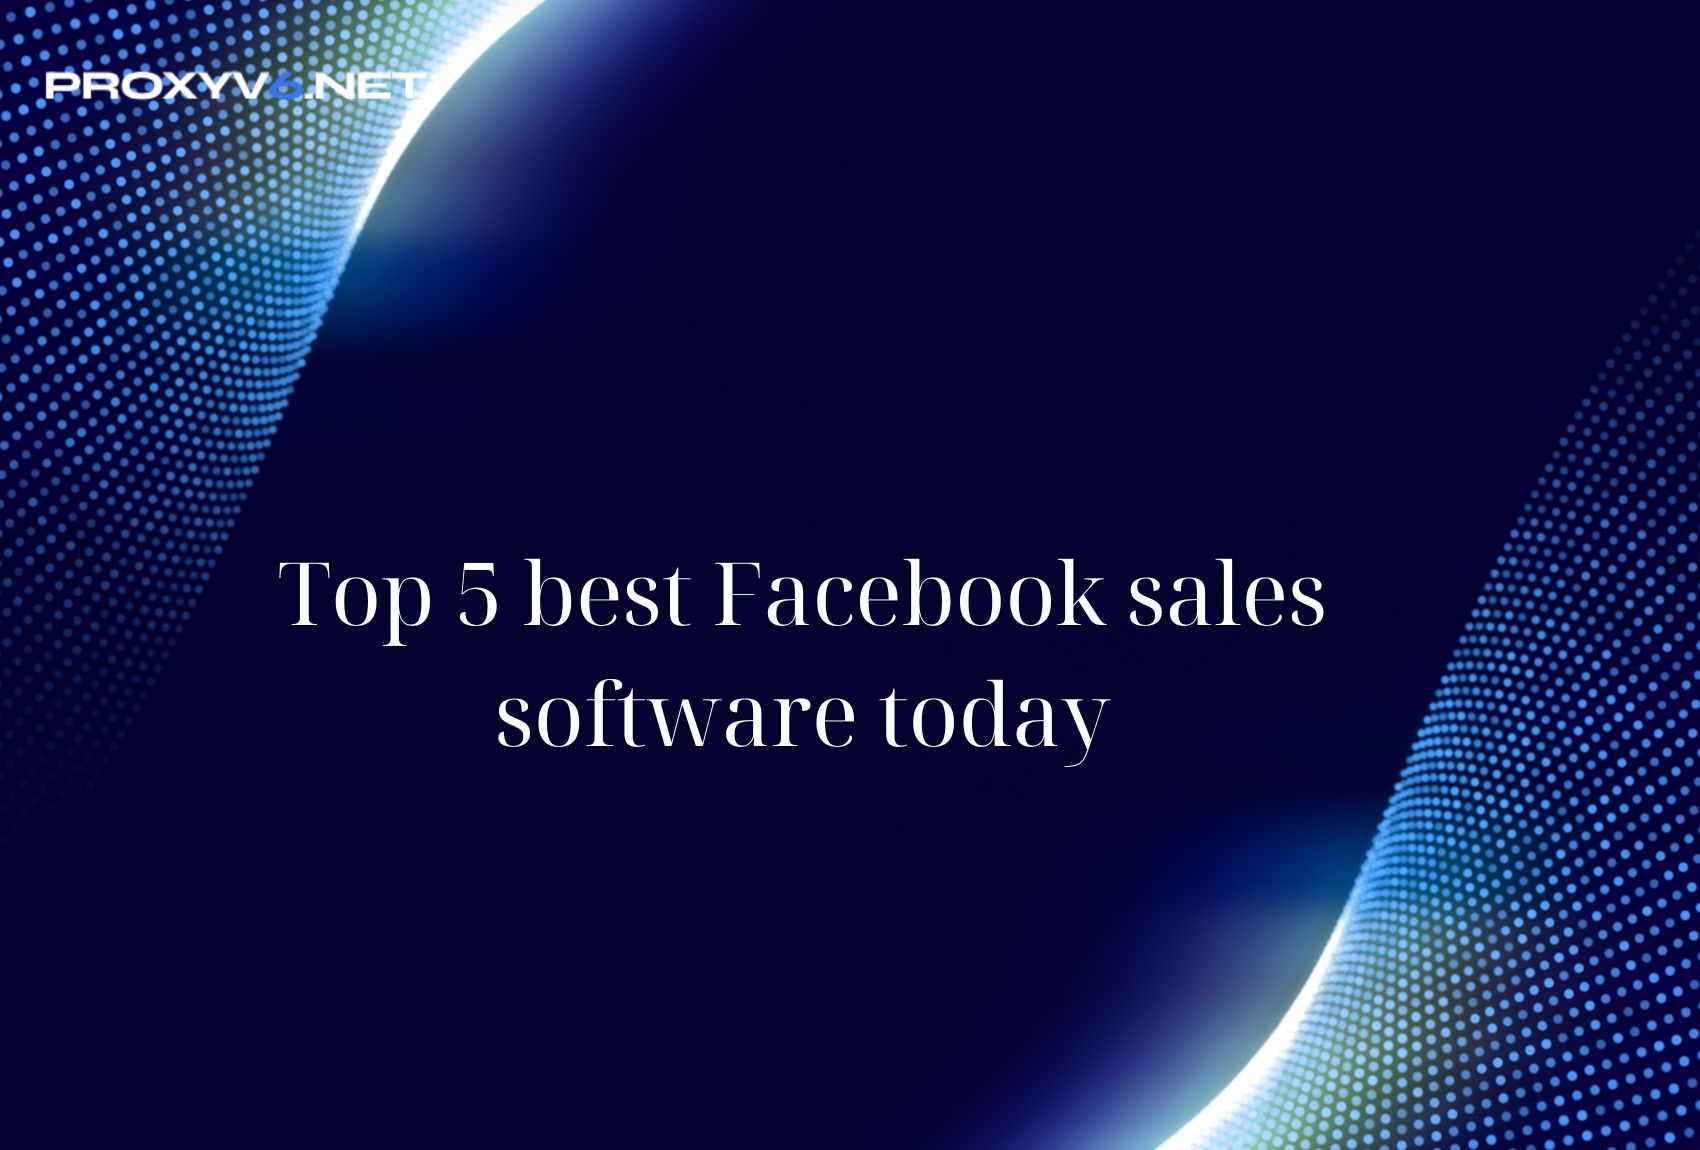 Top 5 best Facebook sales software today